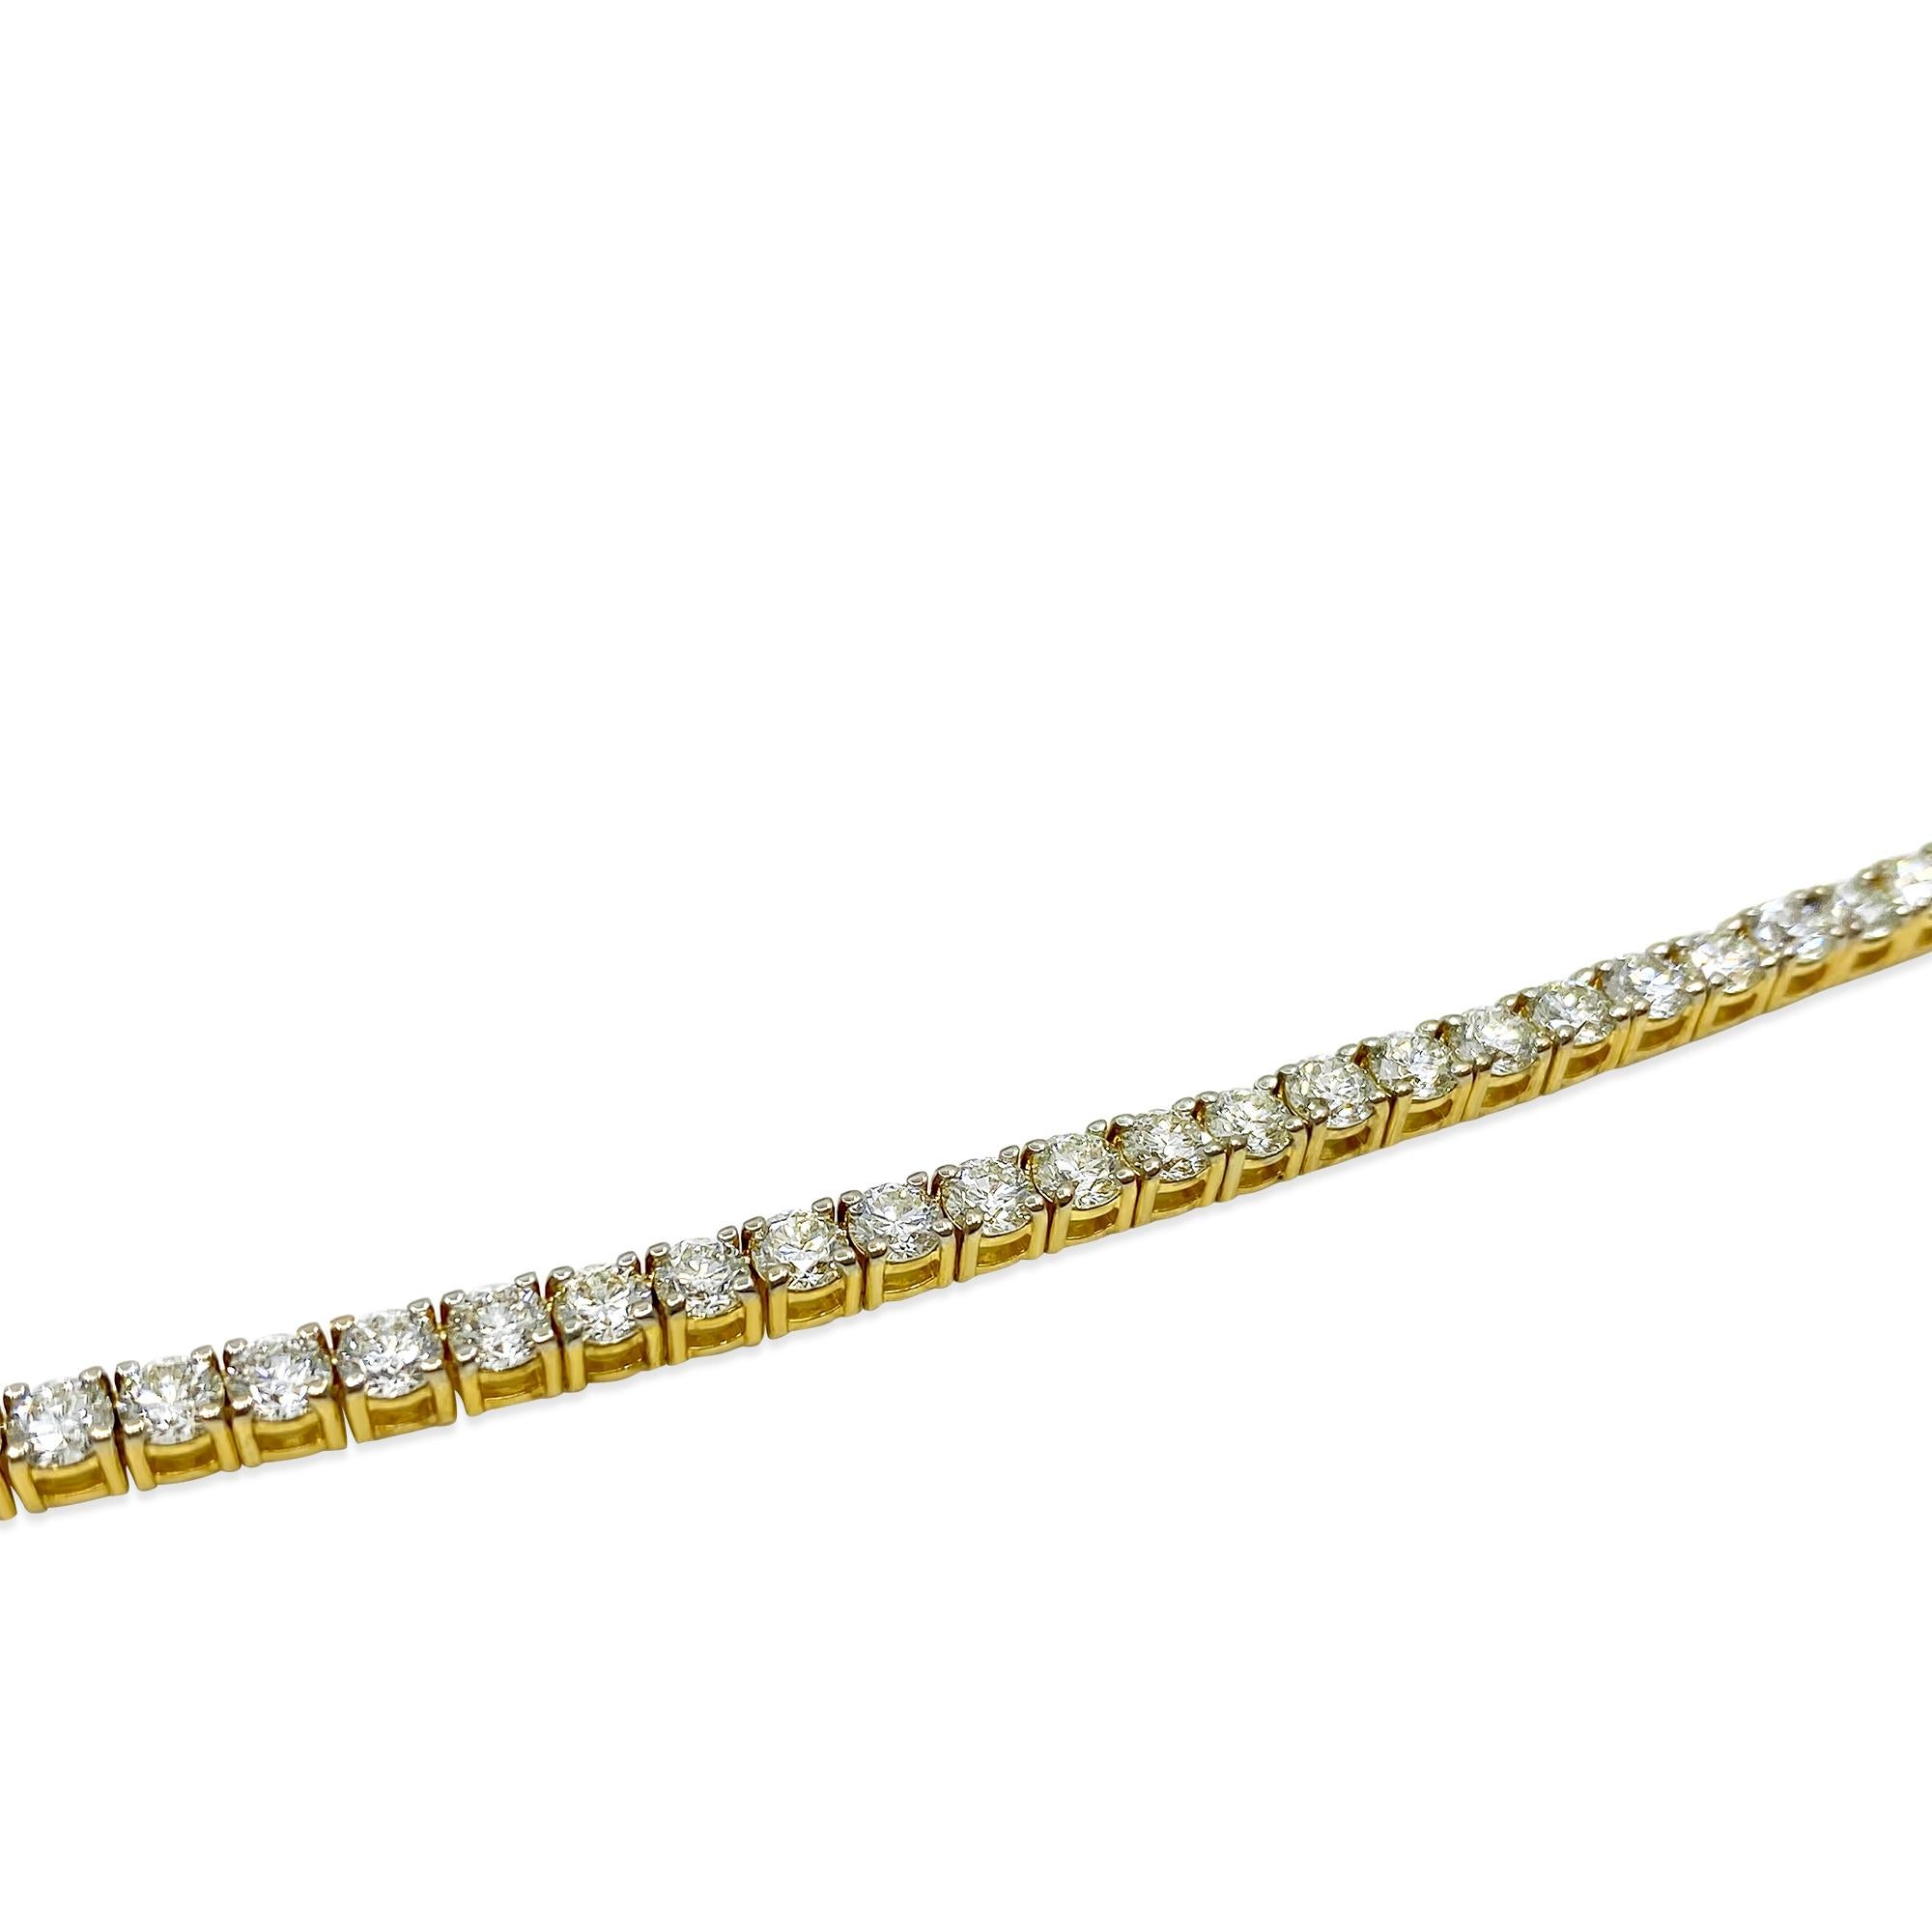 Dieses exquisite Collier aus 14-karätigem Gelbgold besteht aus bemerkenswerten 23 Karat Diamanten mit sehr hoher bis leicht eingeschlossener Reinheit (VVS-VS) und einem Farbgrad von H. Die Halskette mit einer Länge von 24 Zoll präsentiert runde